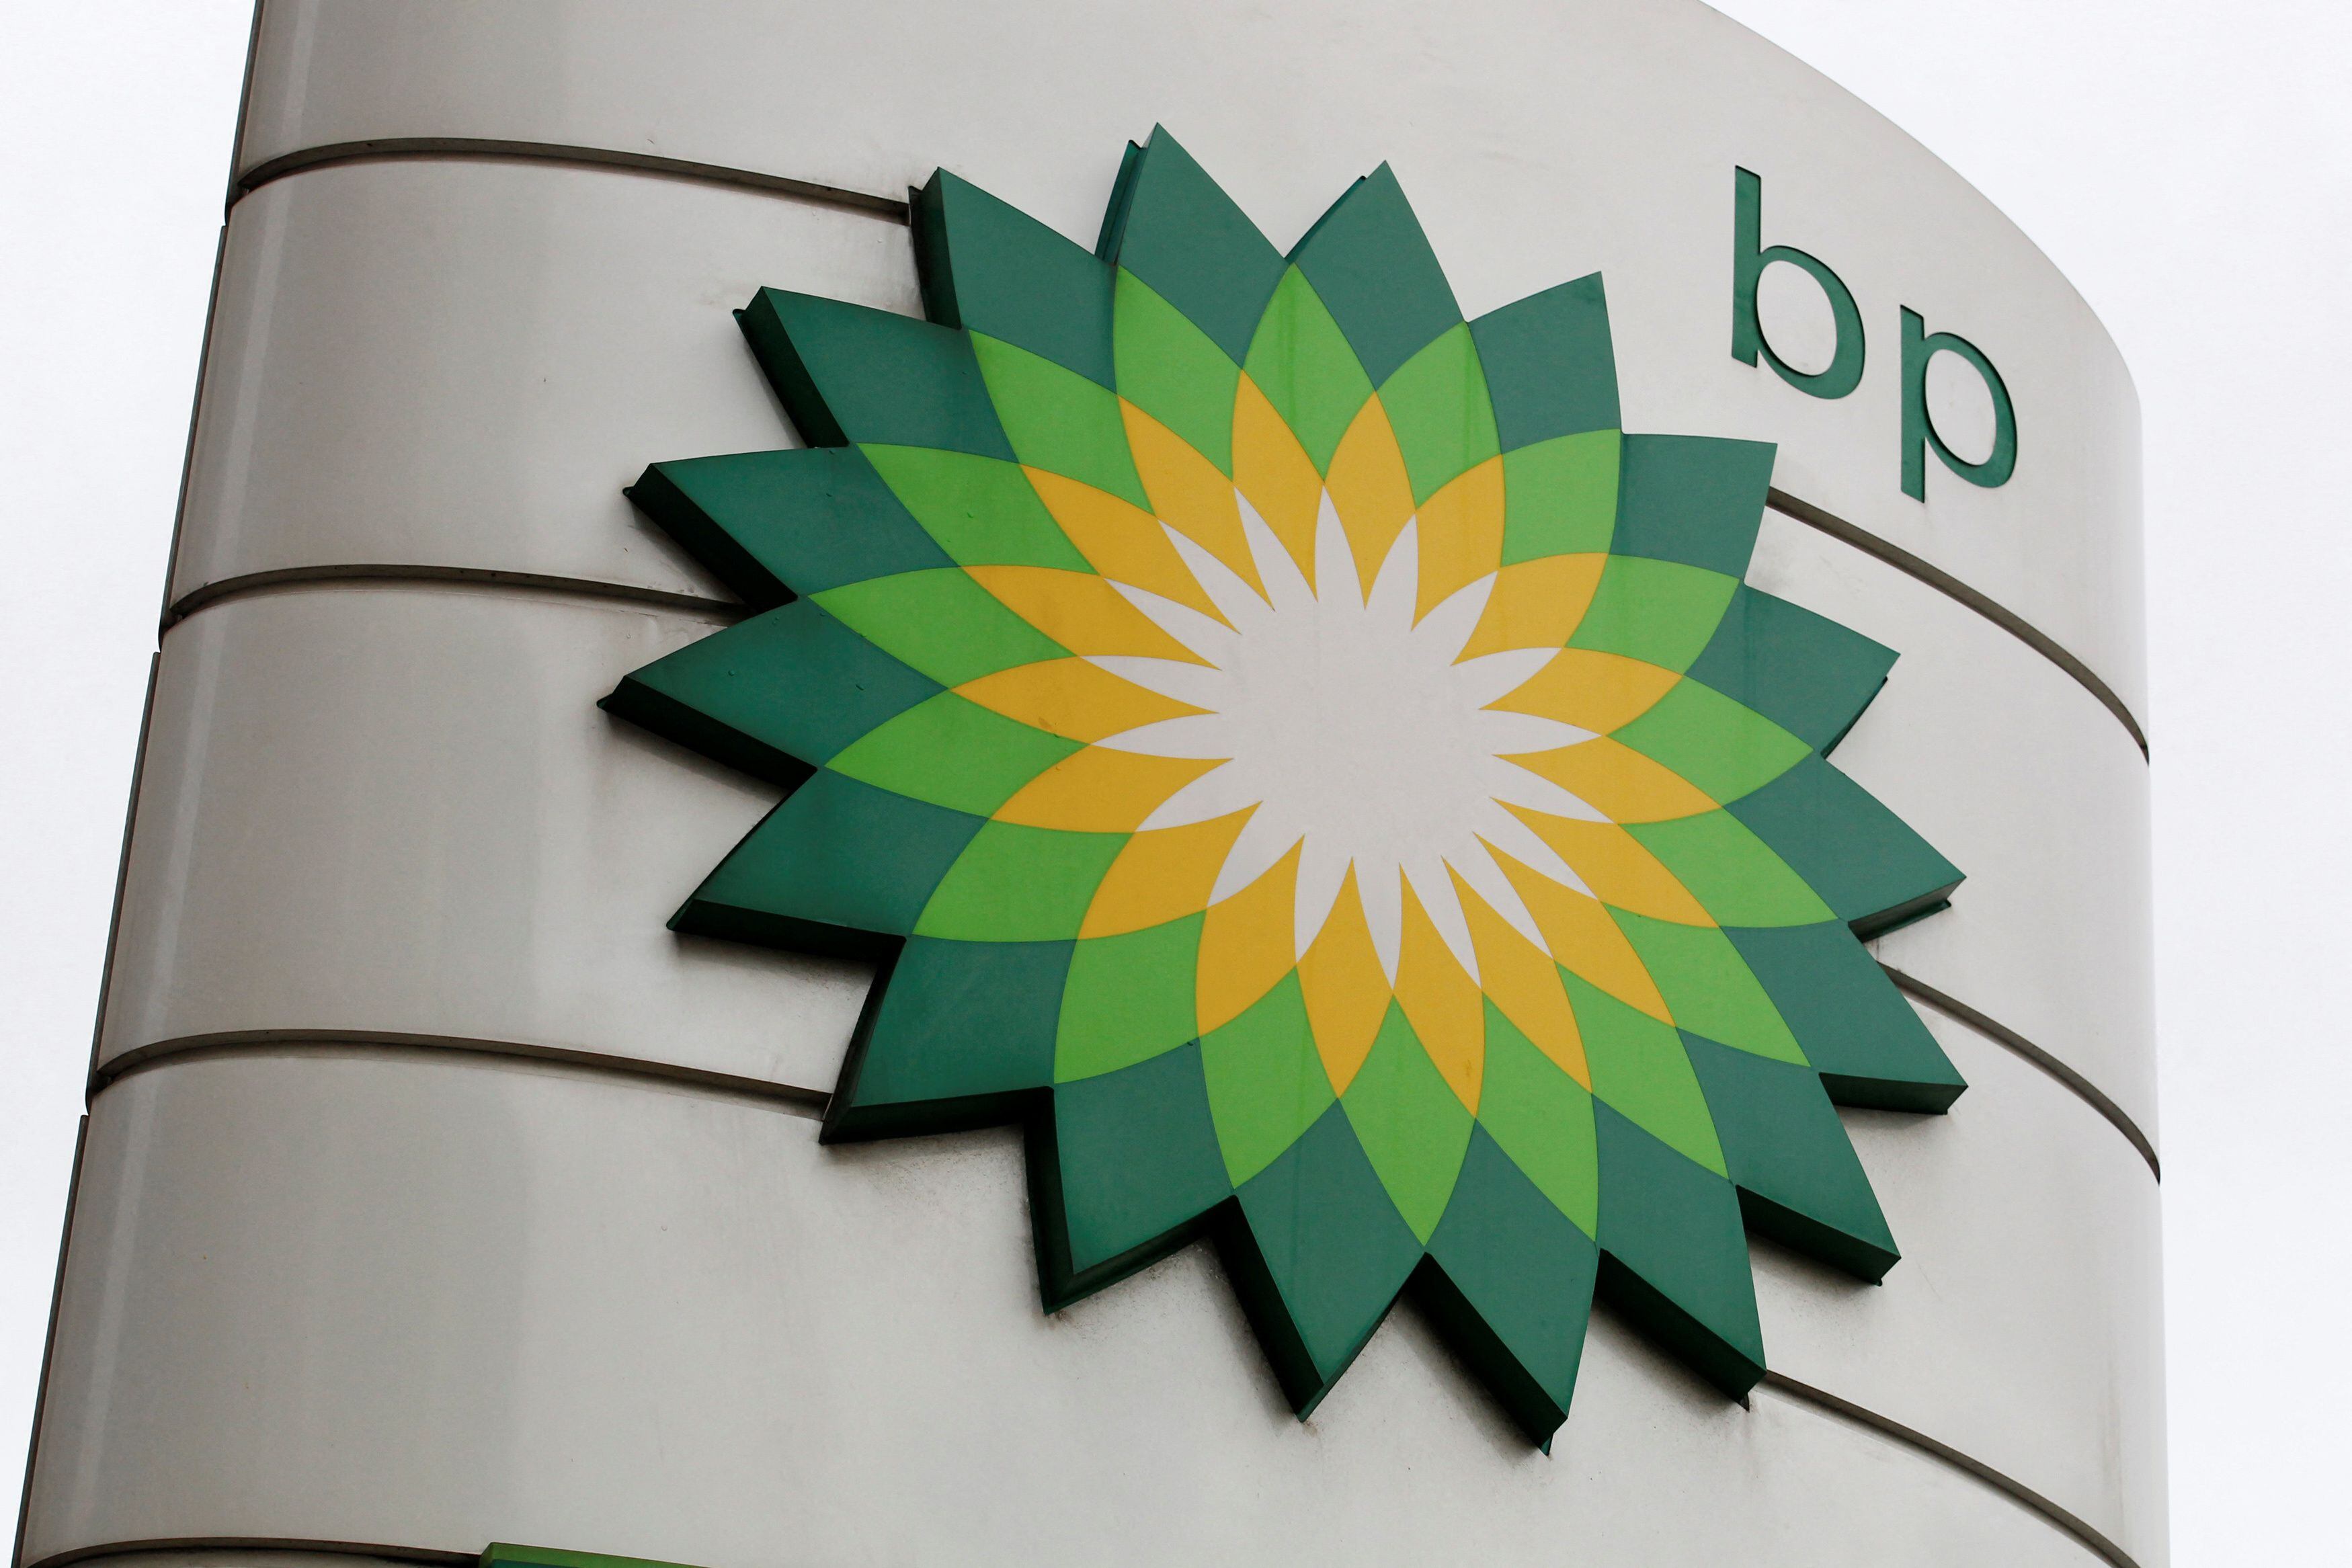 La compañía petrolera BP registró sus ganancias trimestrales más altas en más de una década 